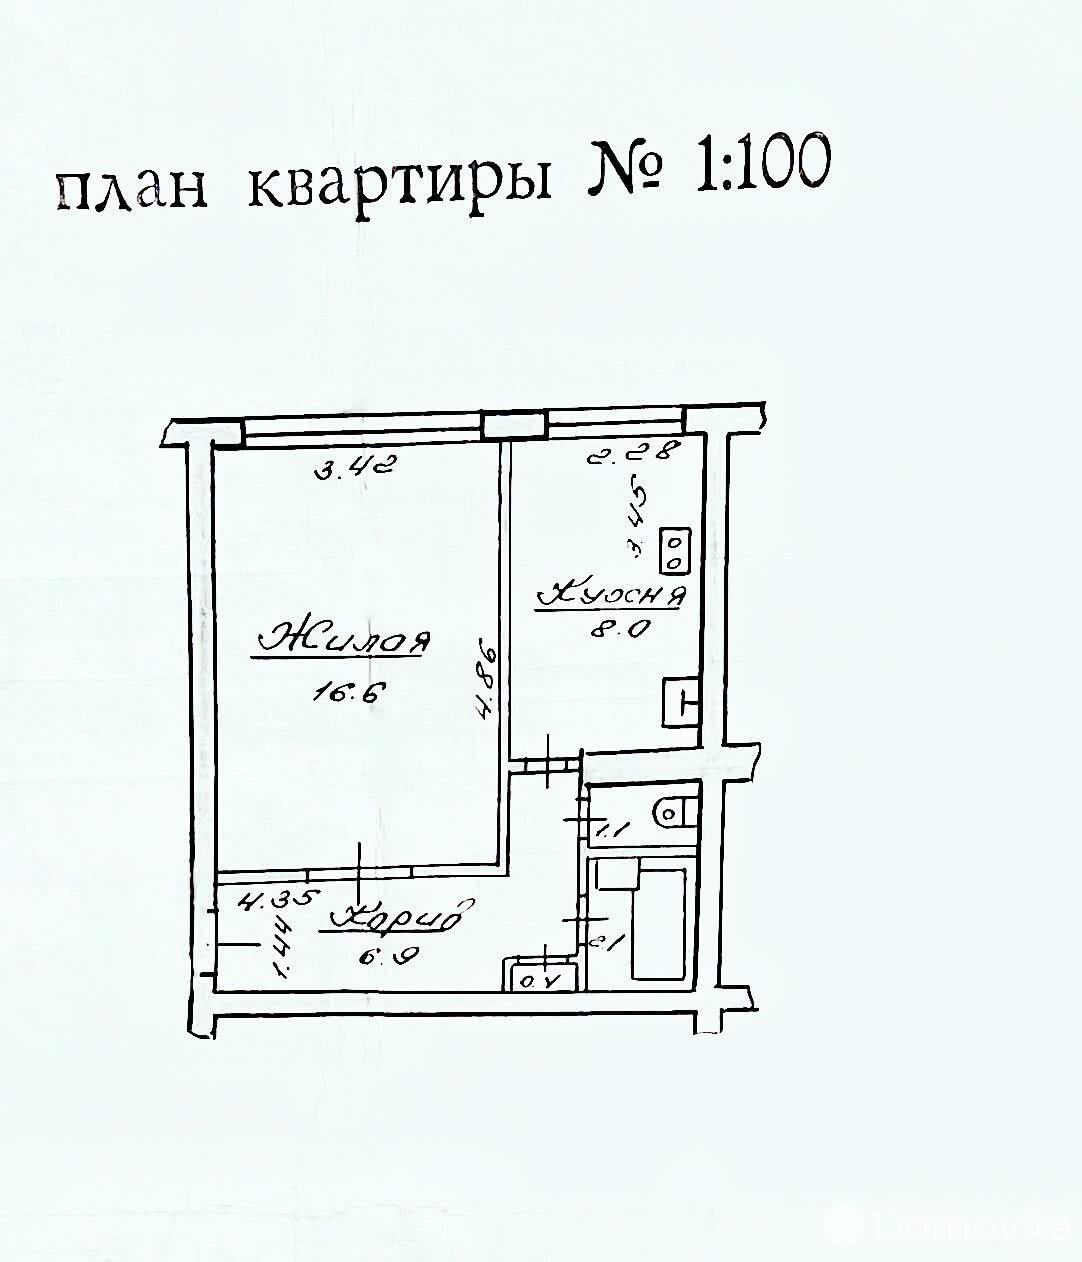 продажа квартиры, Могилев, б-р Днепровский, д. 62